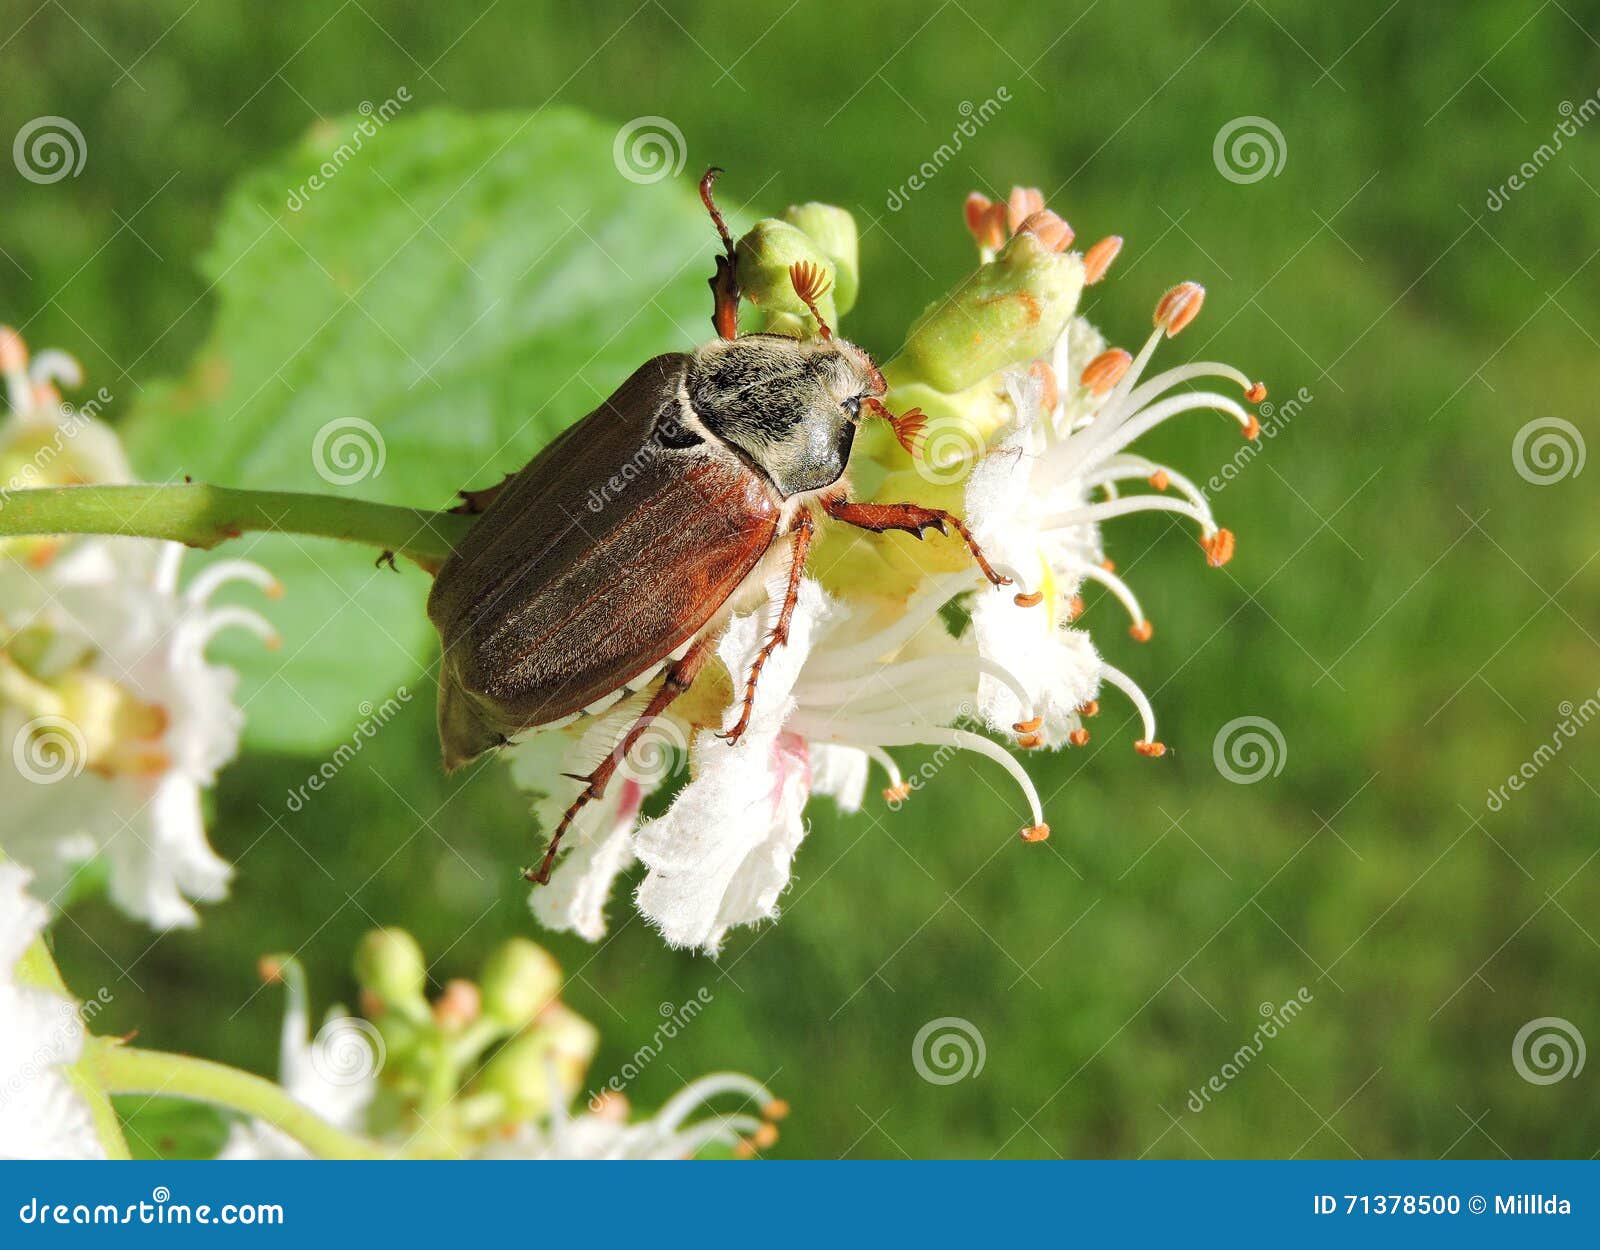 Asiatic Garden Beetle Stock Photo Image Of Beetle Bloom 71378500